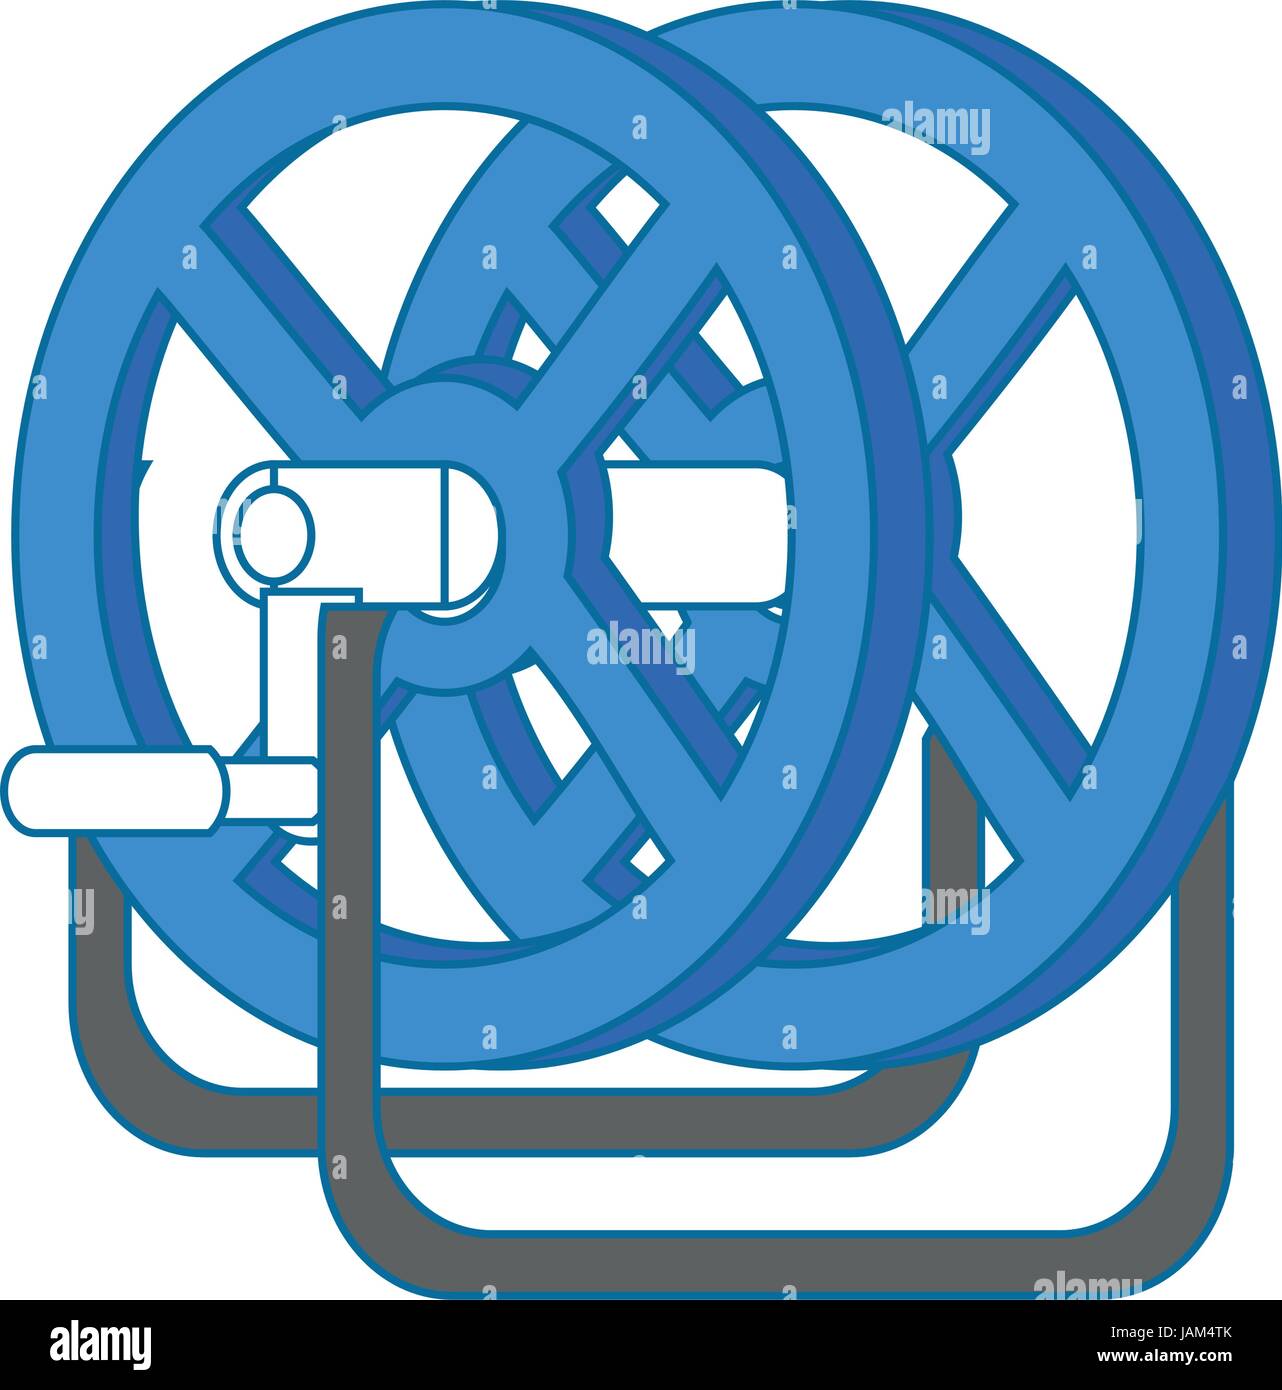 Reel winder tool Stock Vector Image & Art - Alamy